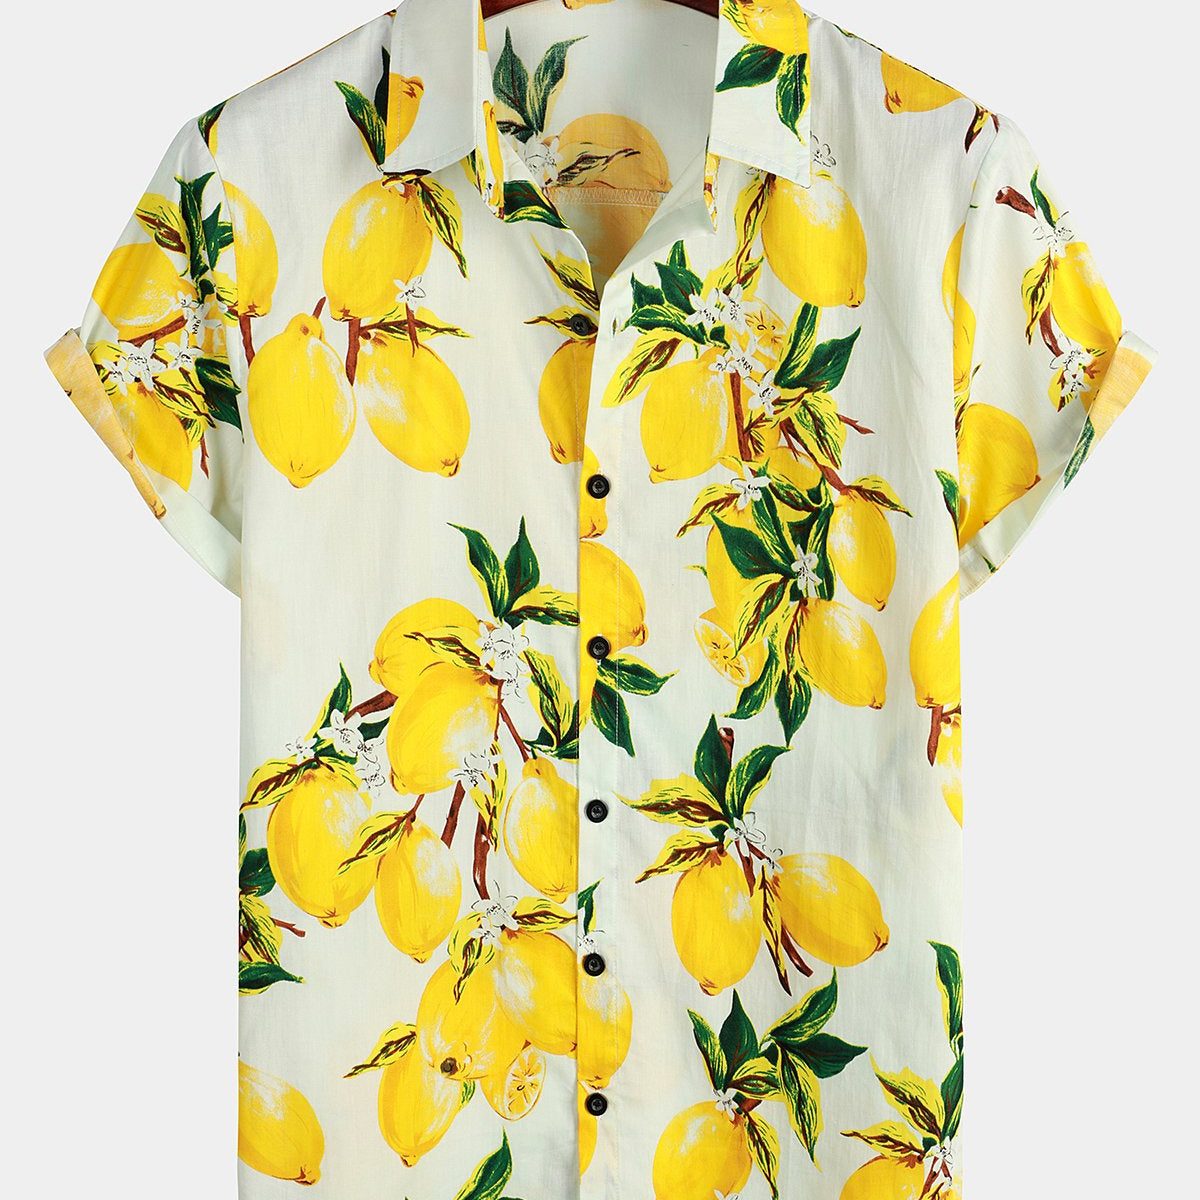 Chemise à manches courtes hawaïenne à imprimé citron jaune tropical pour hommes